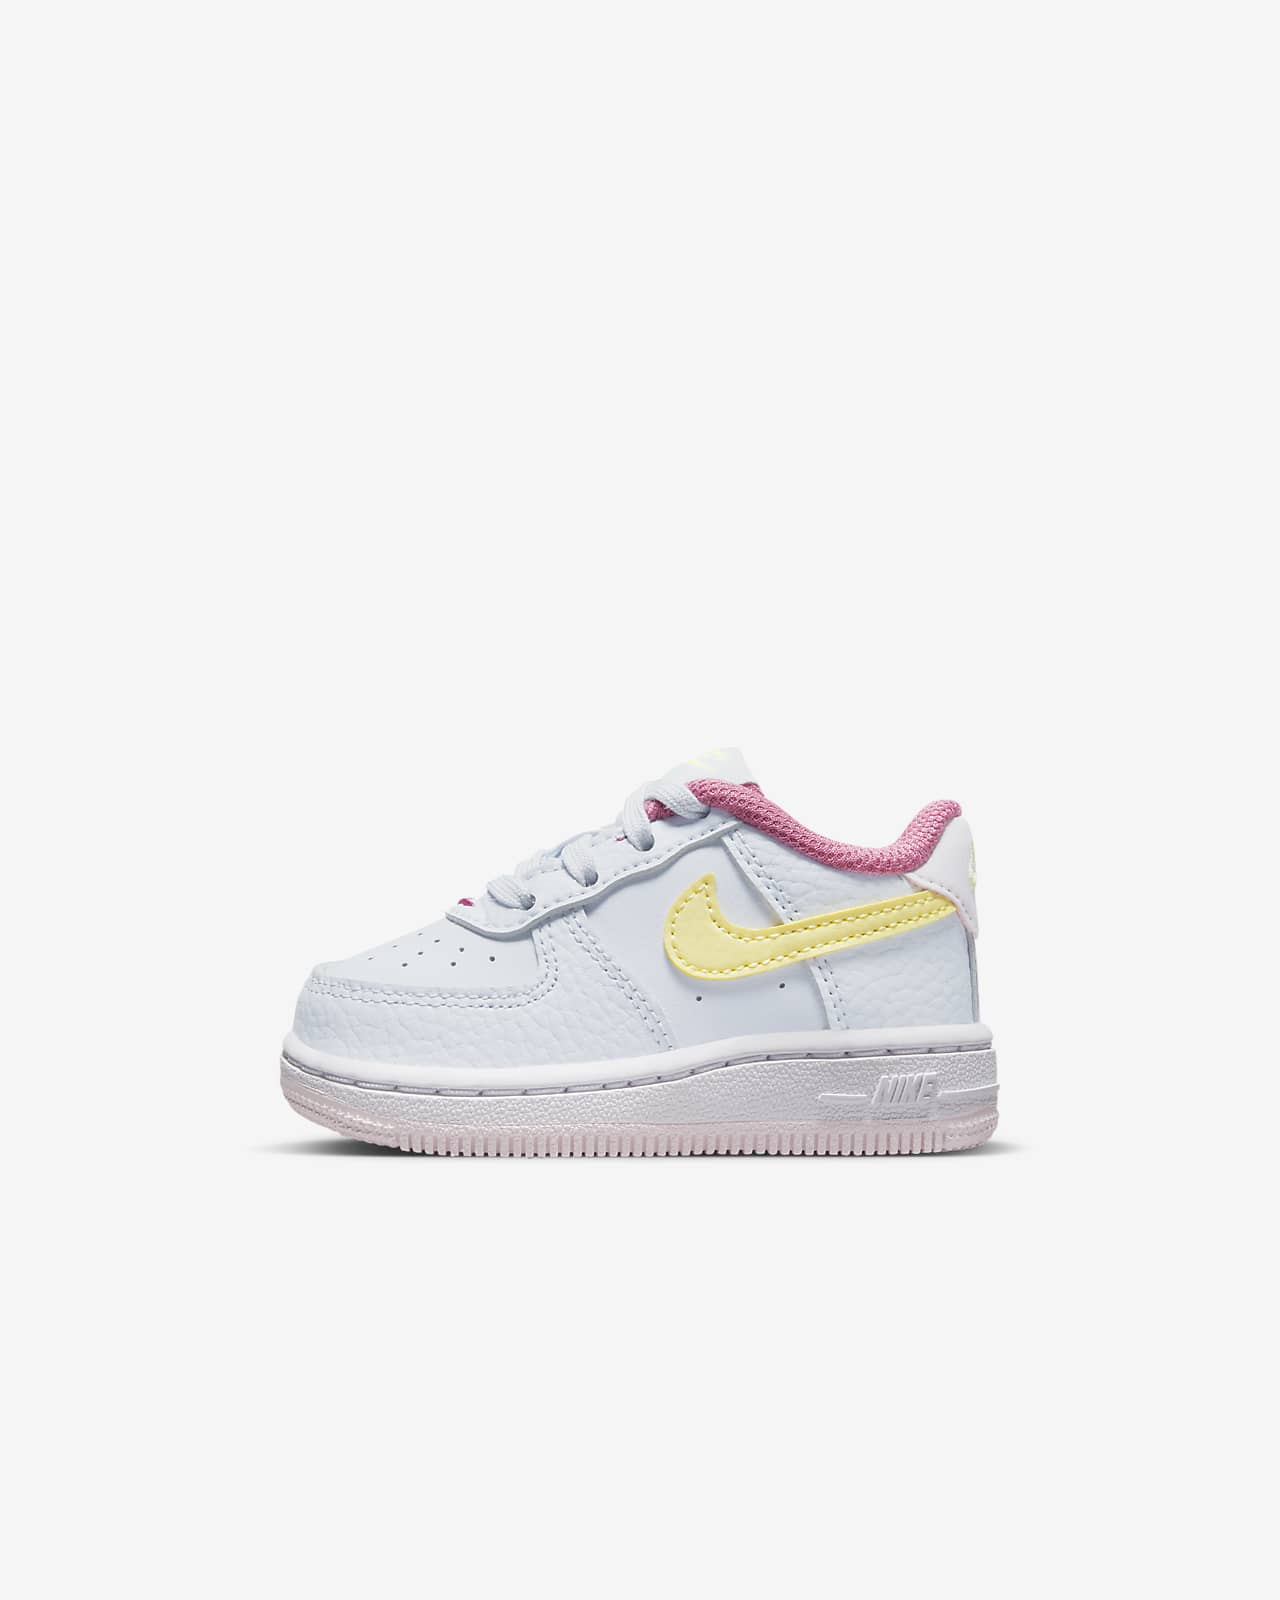 Alert rundvlees Storing Nike Force 1 Baby/Toddler Shoes. Nike.com